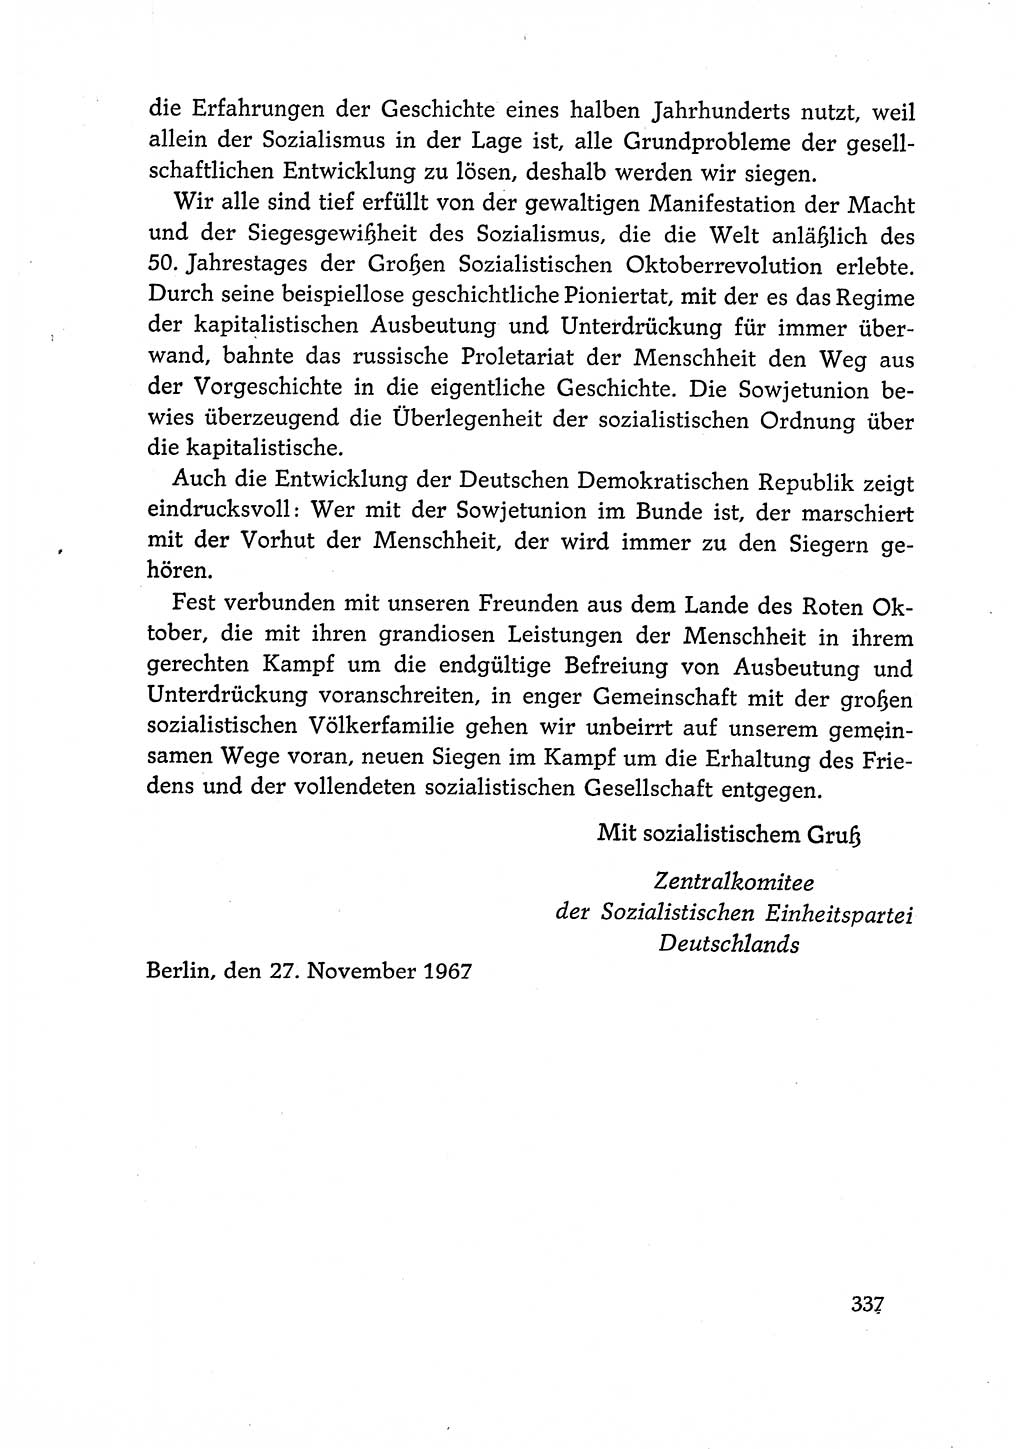 Dokumente der Sozialistischen Einheitspartei Deutschlands (SED) [Deutsche Demokratische Republik (DDR)] 1966-1967, Seite 337 (Dok. SED DDR 1966-1967, S. 337)